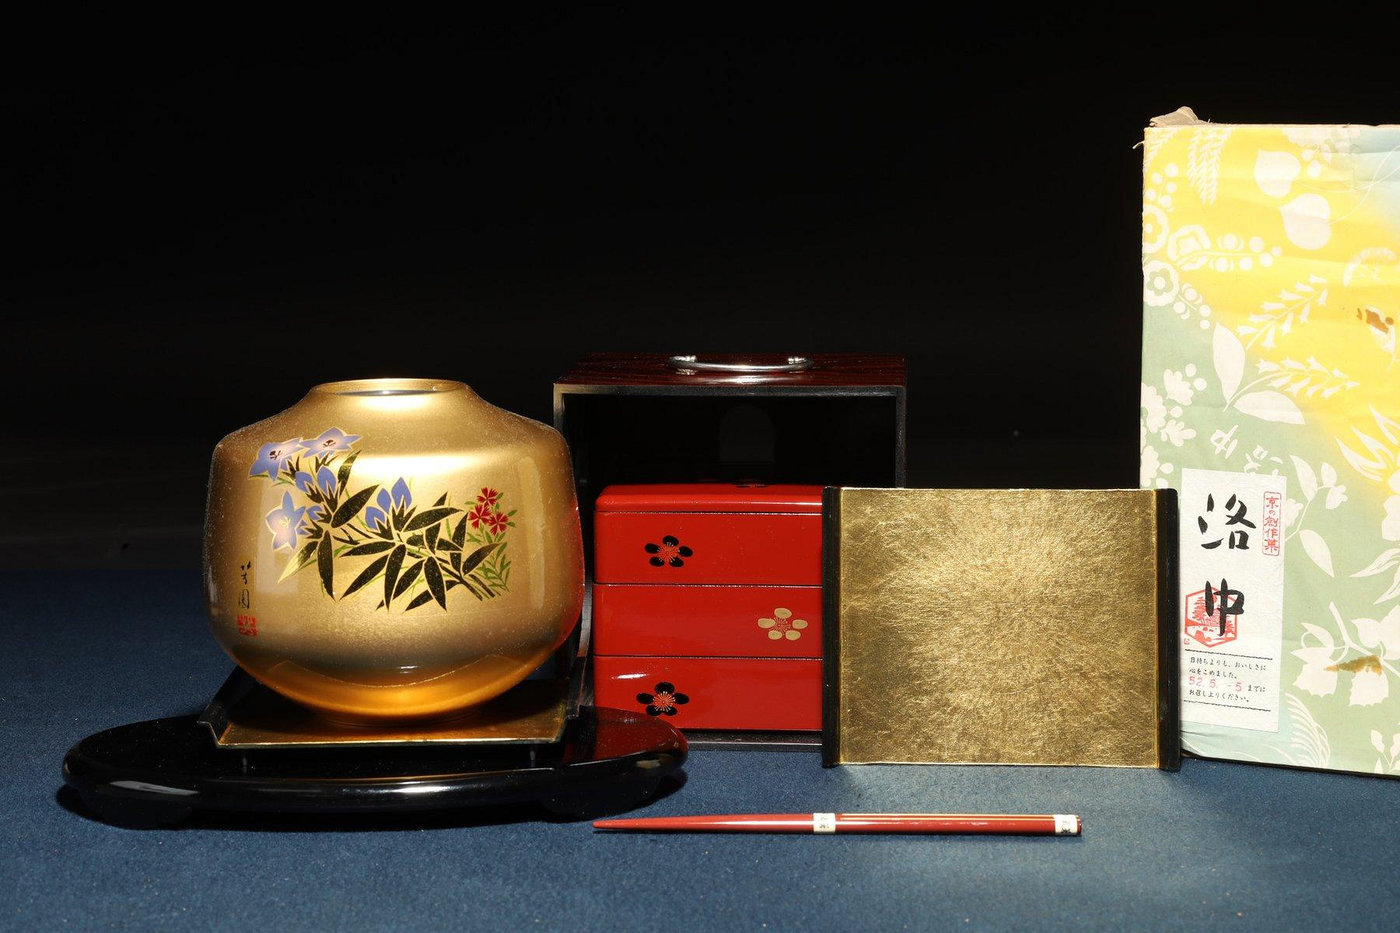 3/11結標京洛中金箔漆器等兩件A030186 -漆碗漆盤漆盒茶箱重箱承盤收藏 